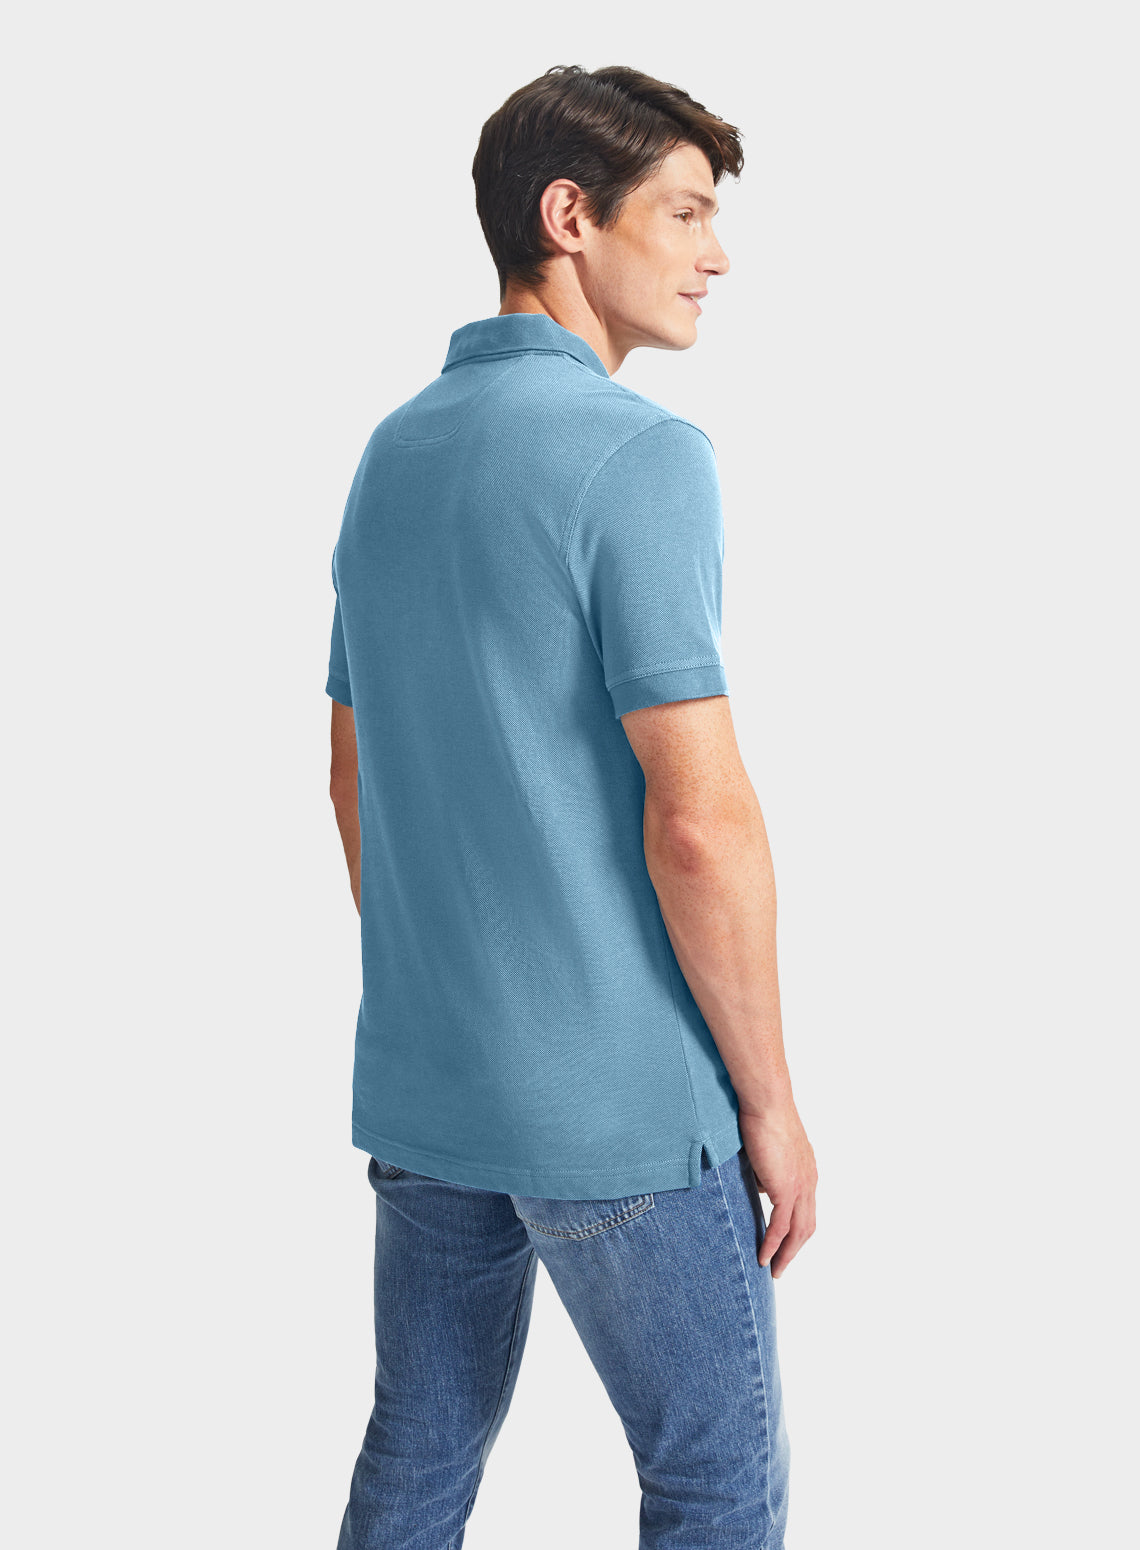 Pique Polo Shirt in Light Blue - Oxford Shirt Co.